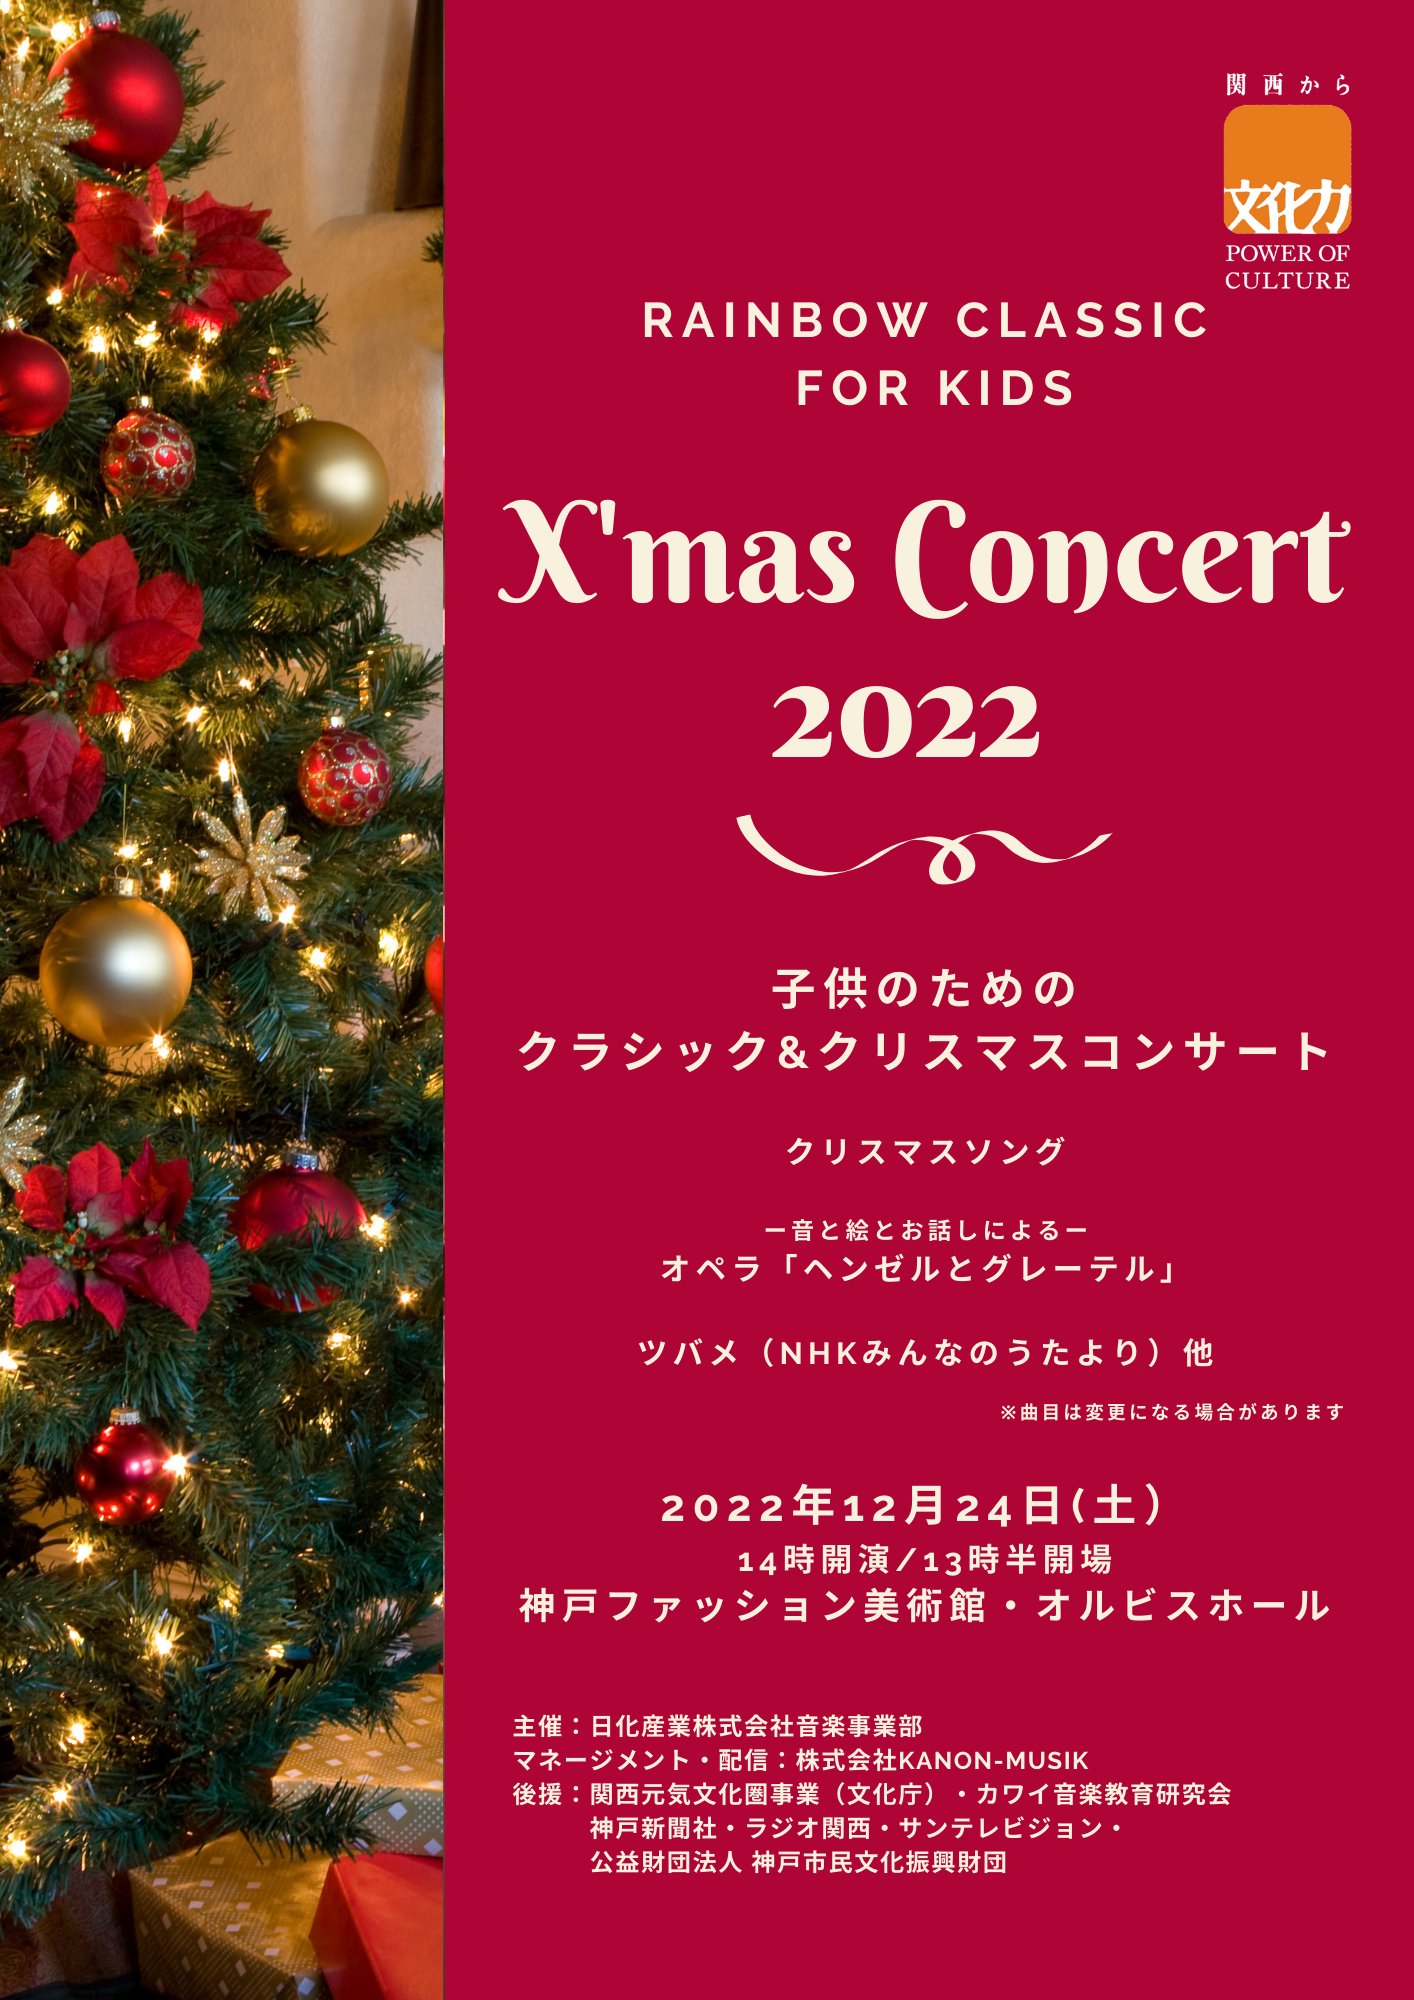 【オルビスホール情報】12/24(土)「RAINBOW CLASSIC FOR KIDS X’mas Concert 2022」開催のお知らせ